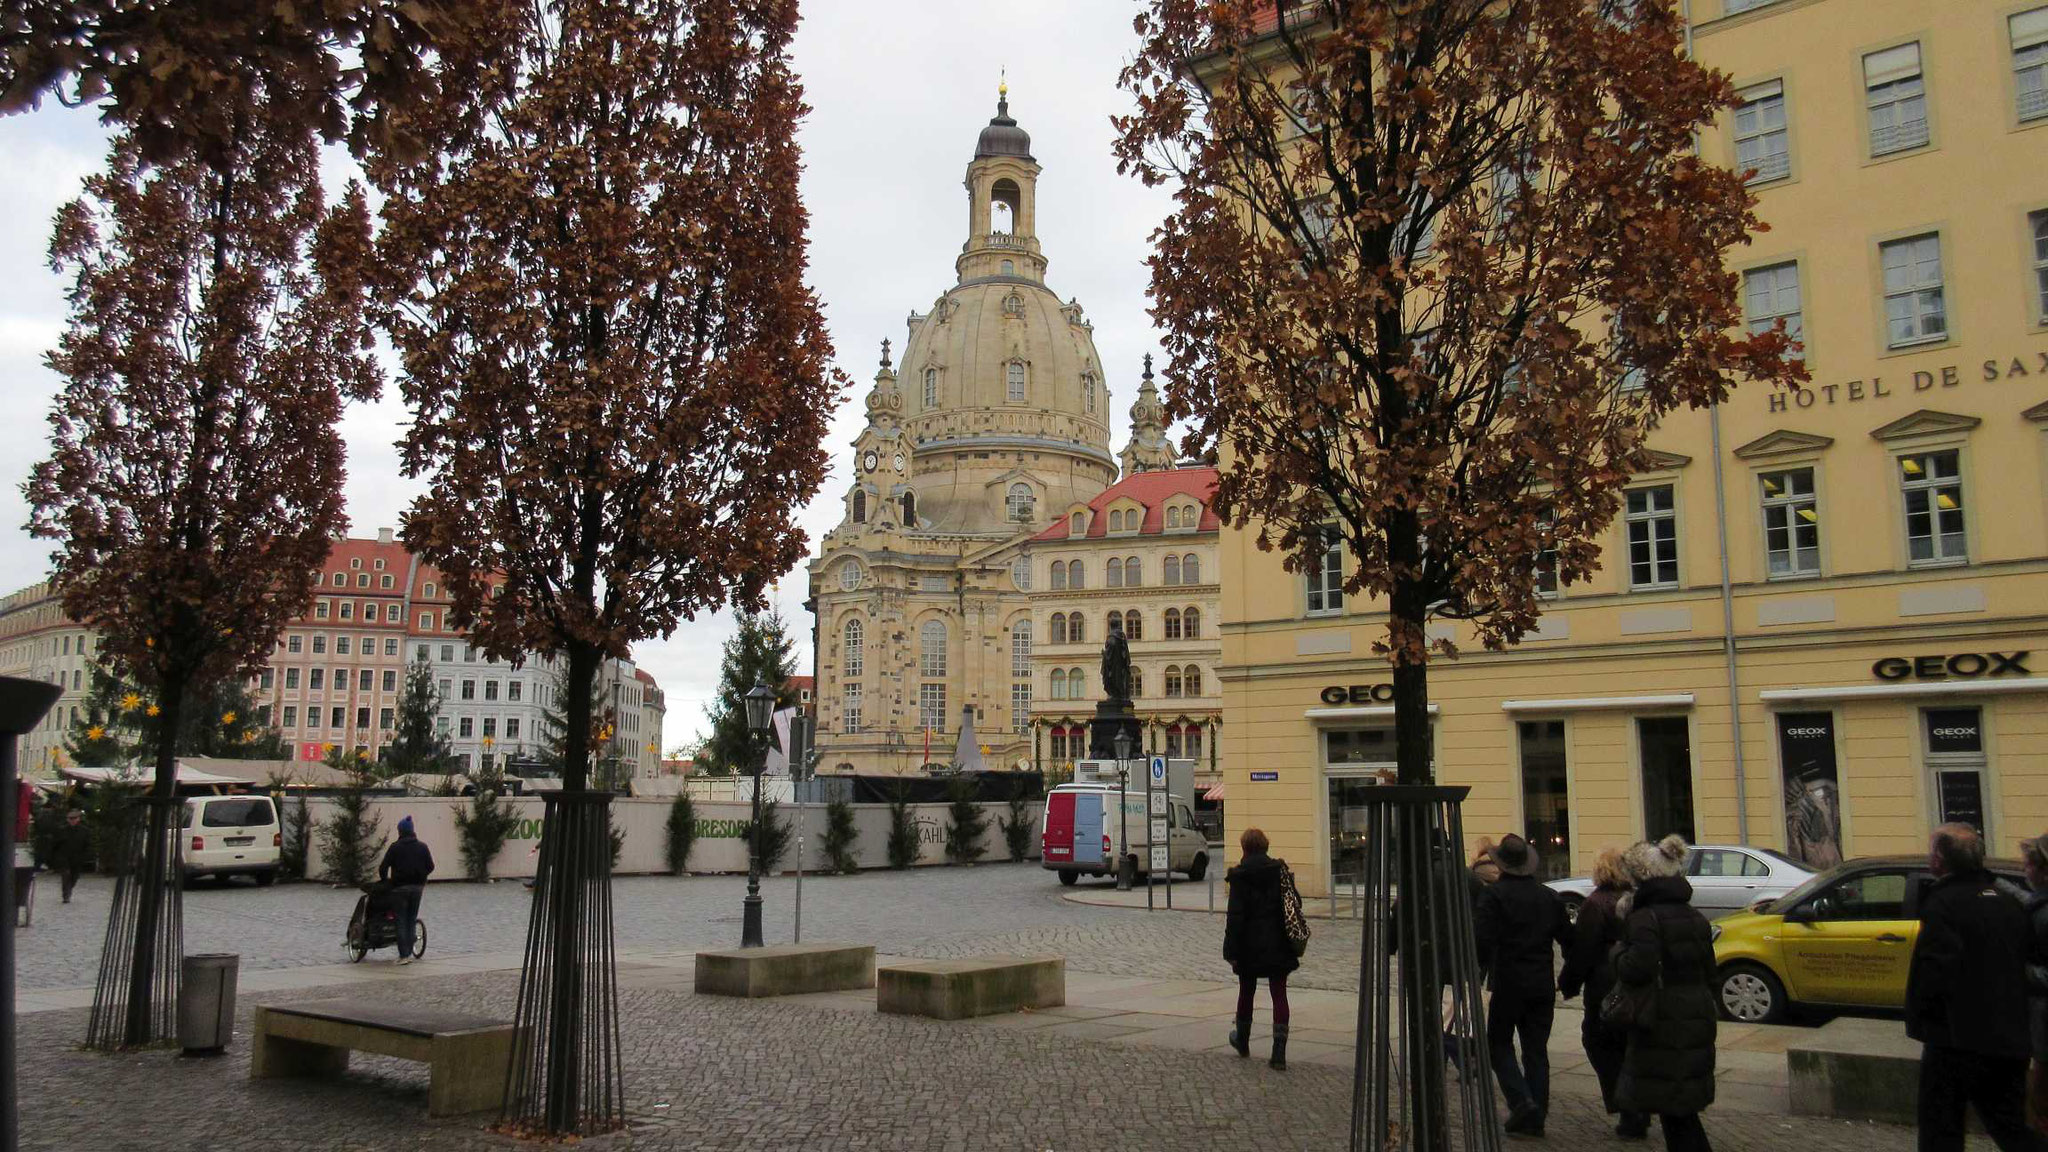 Dresden, Frauenkirche